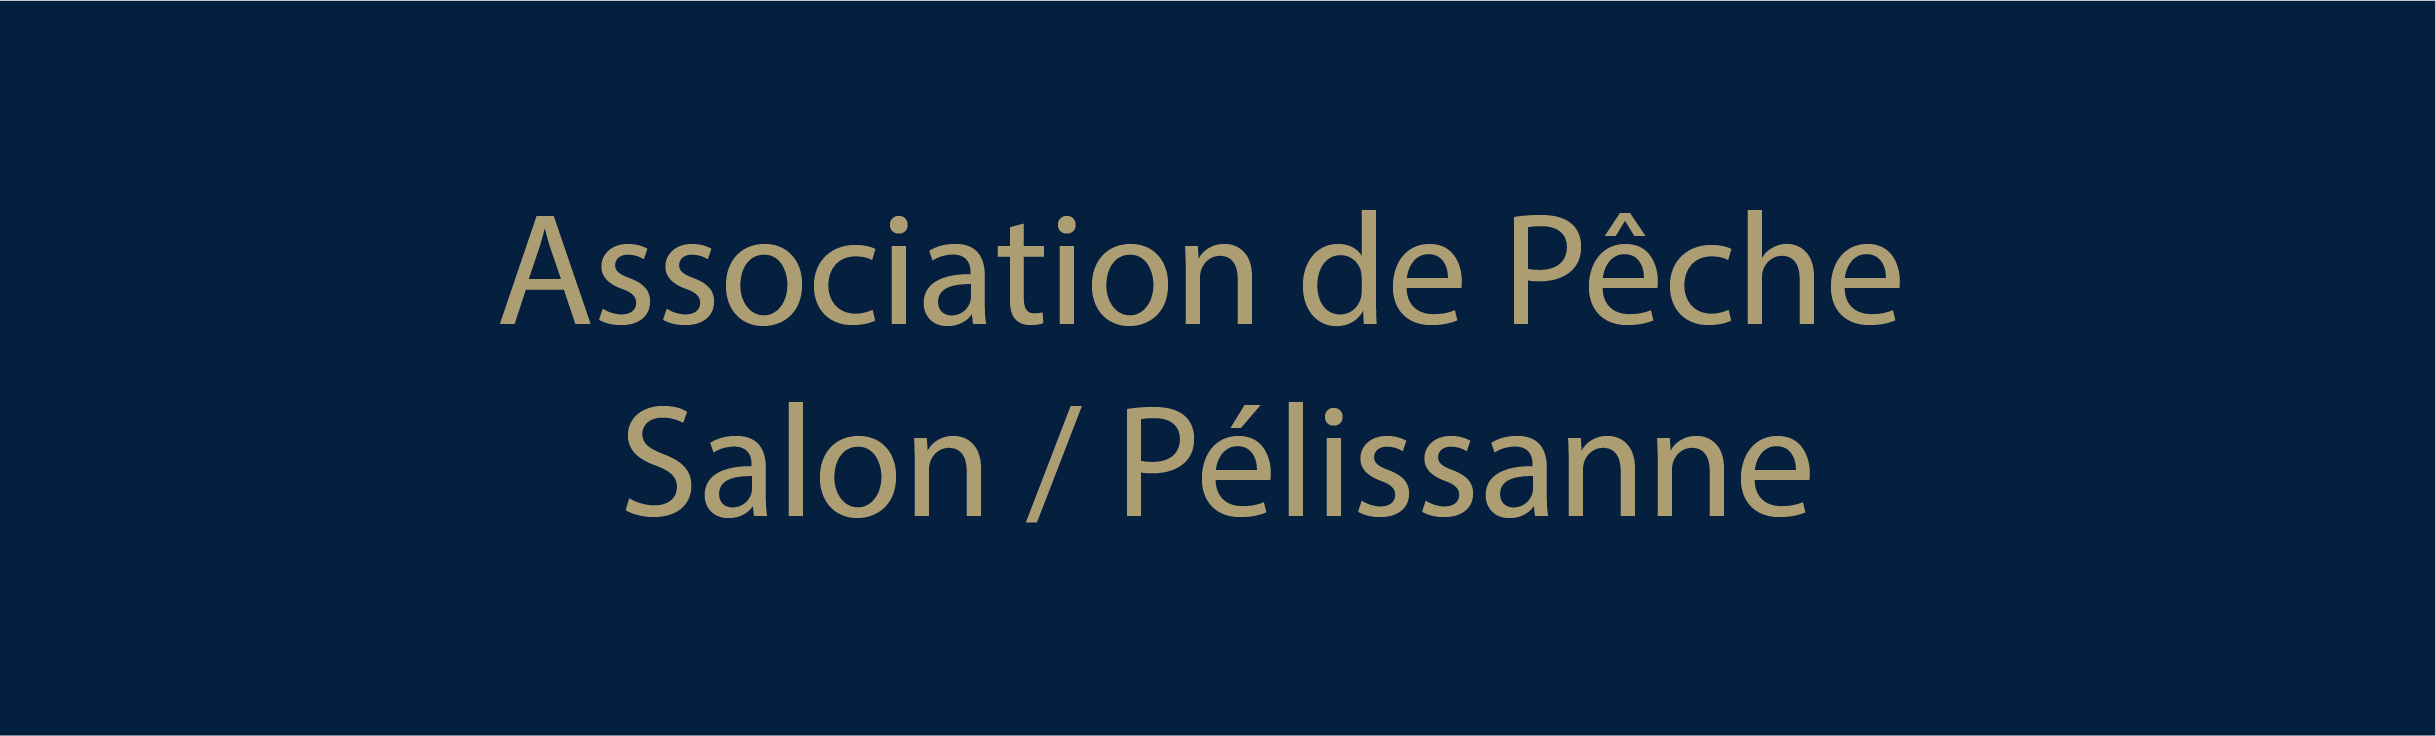 Association de Pêche Salon/Pélissanne 